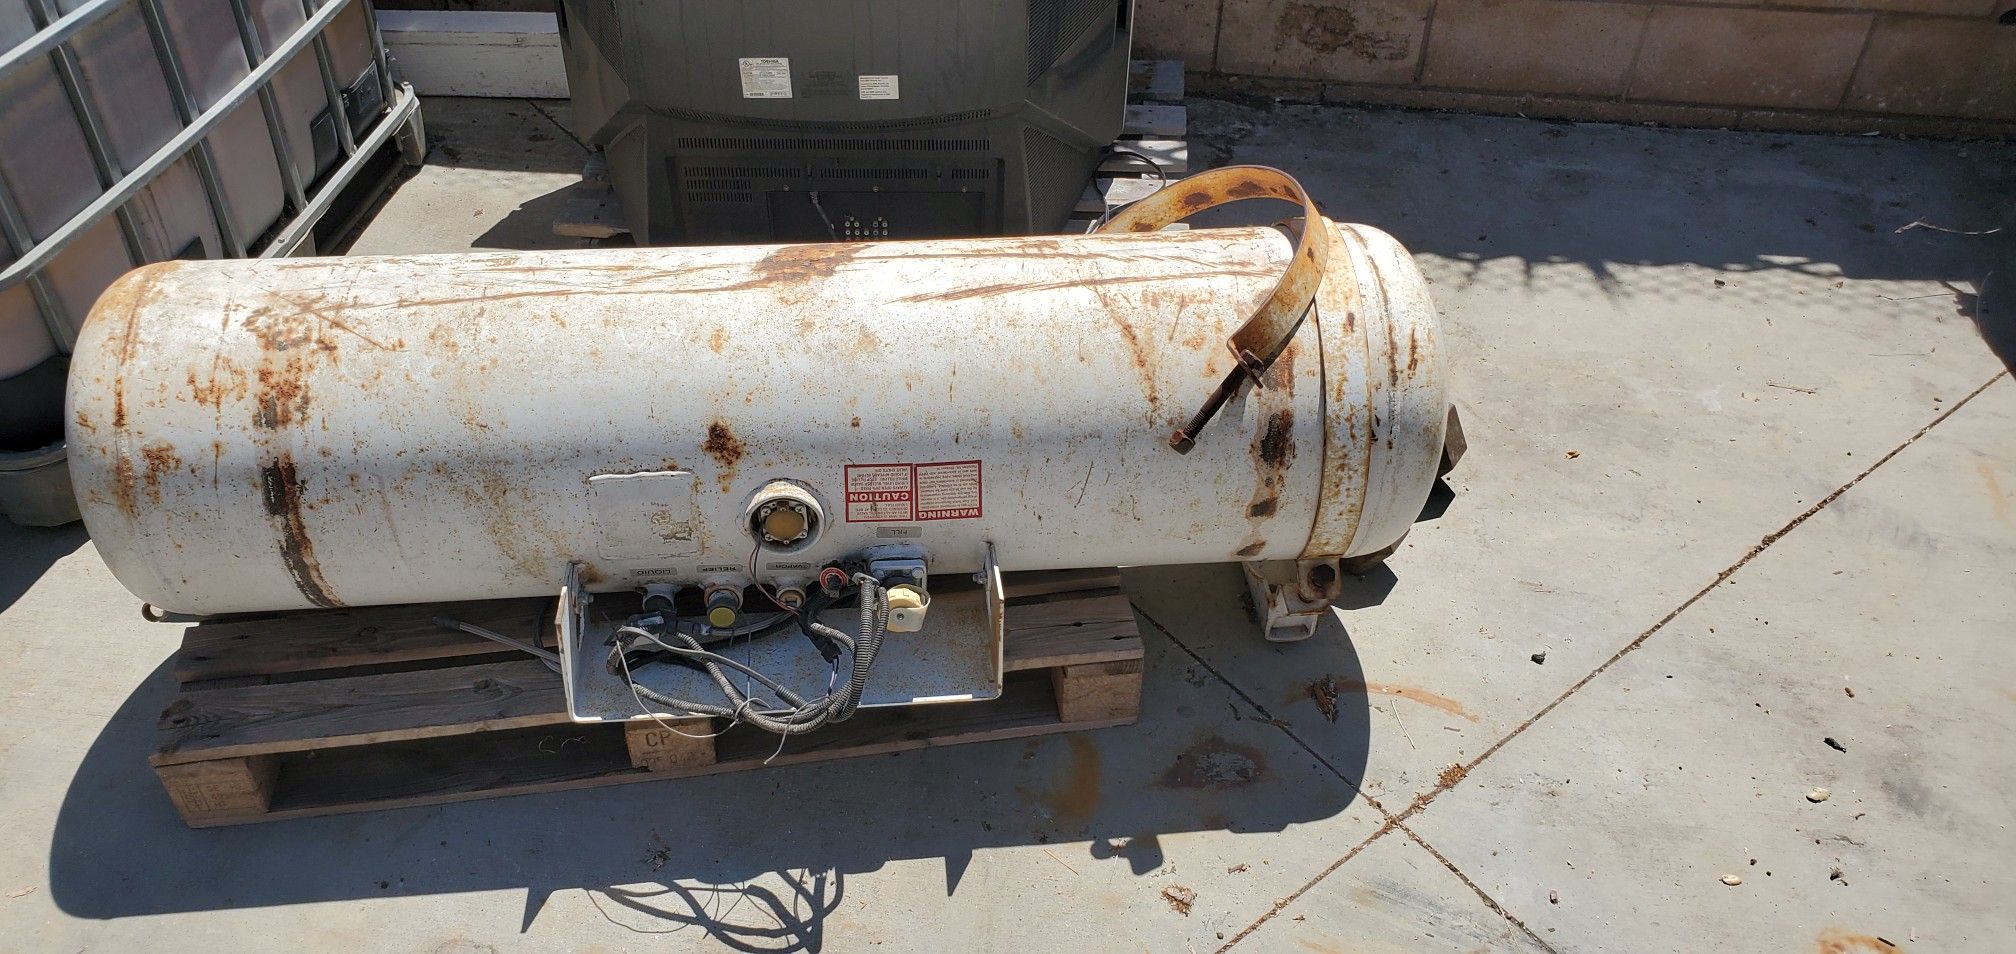 Undermount propane tank